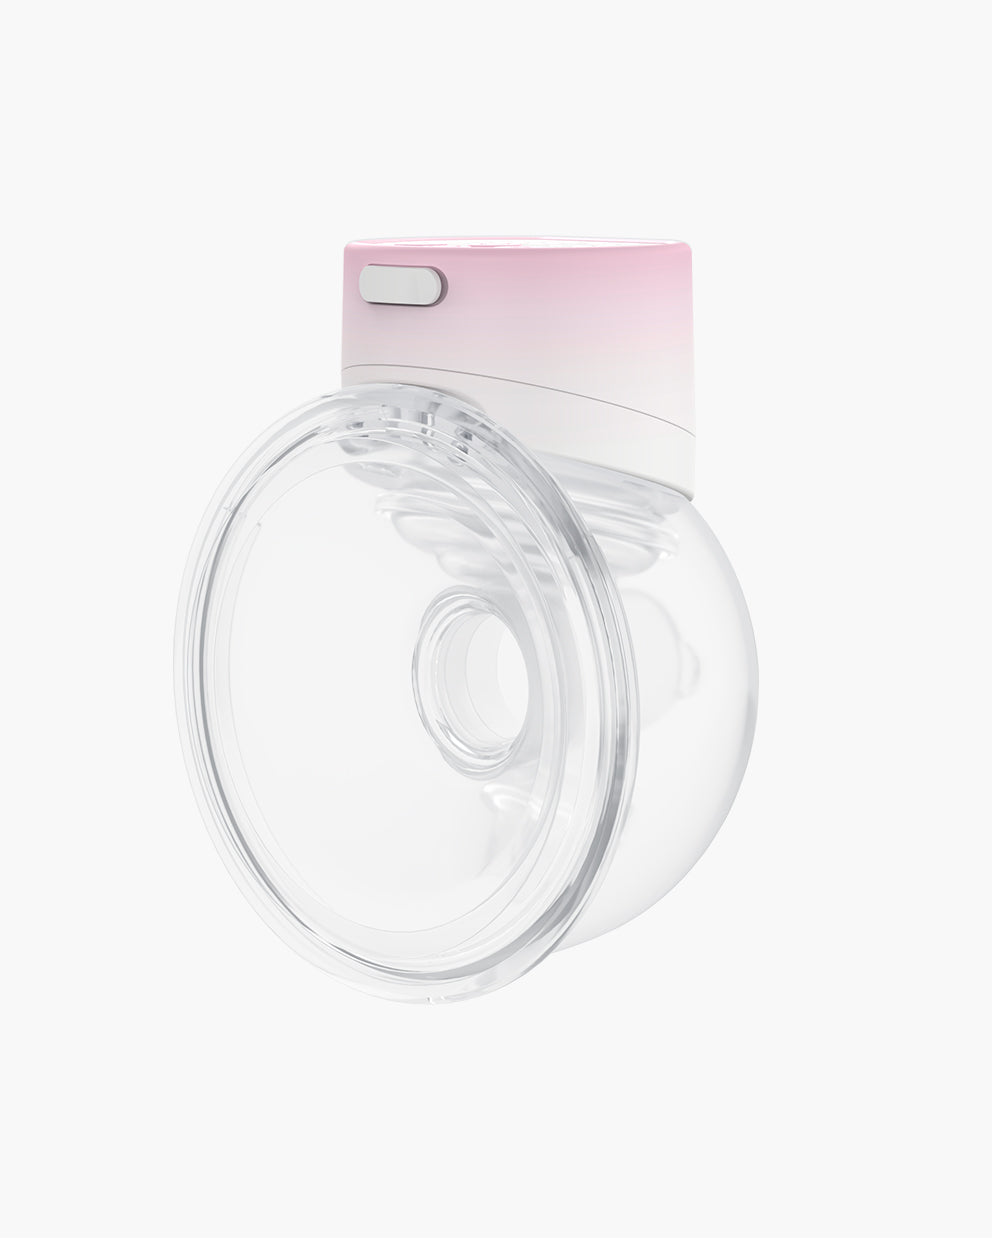 S12 Pro Wearable Breast Pump - High Efficiency 1.0